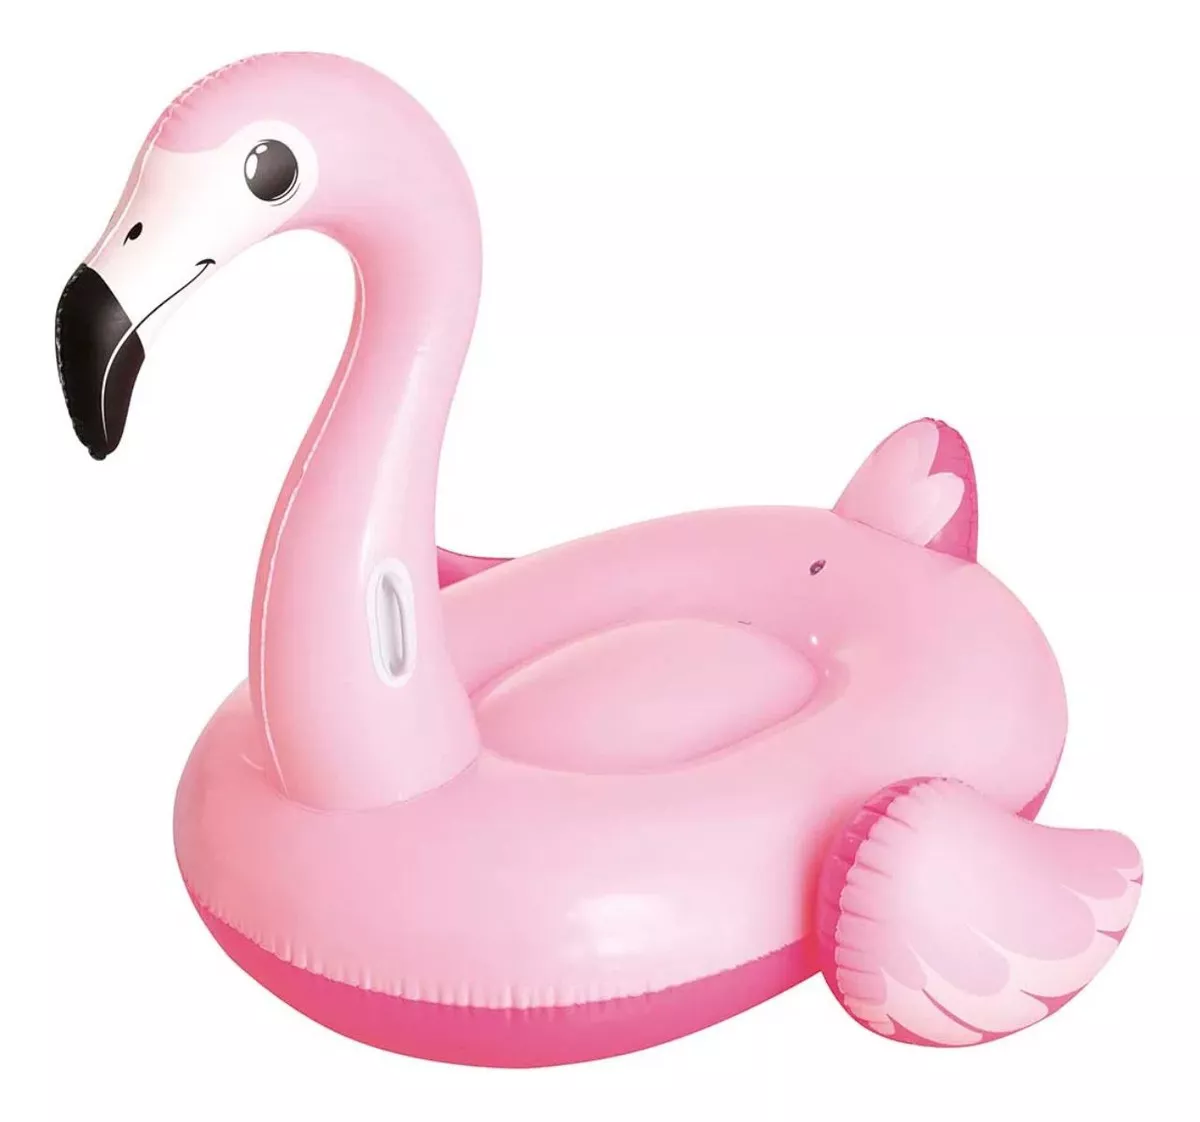 Primeira imagem para pesquisa de boia flamingo